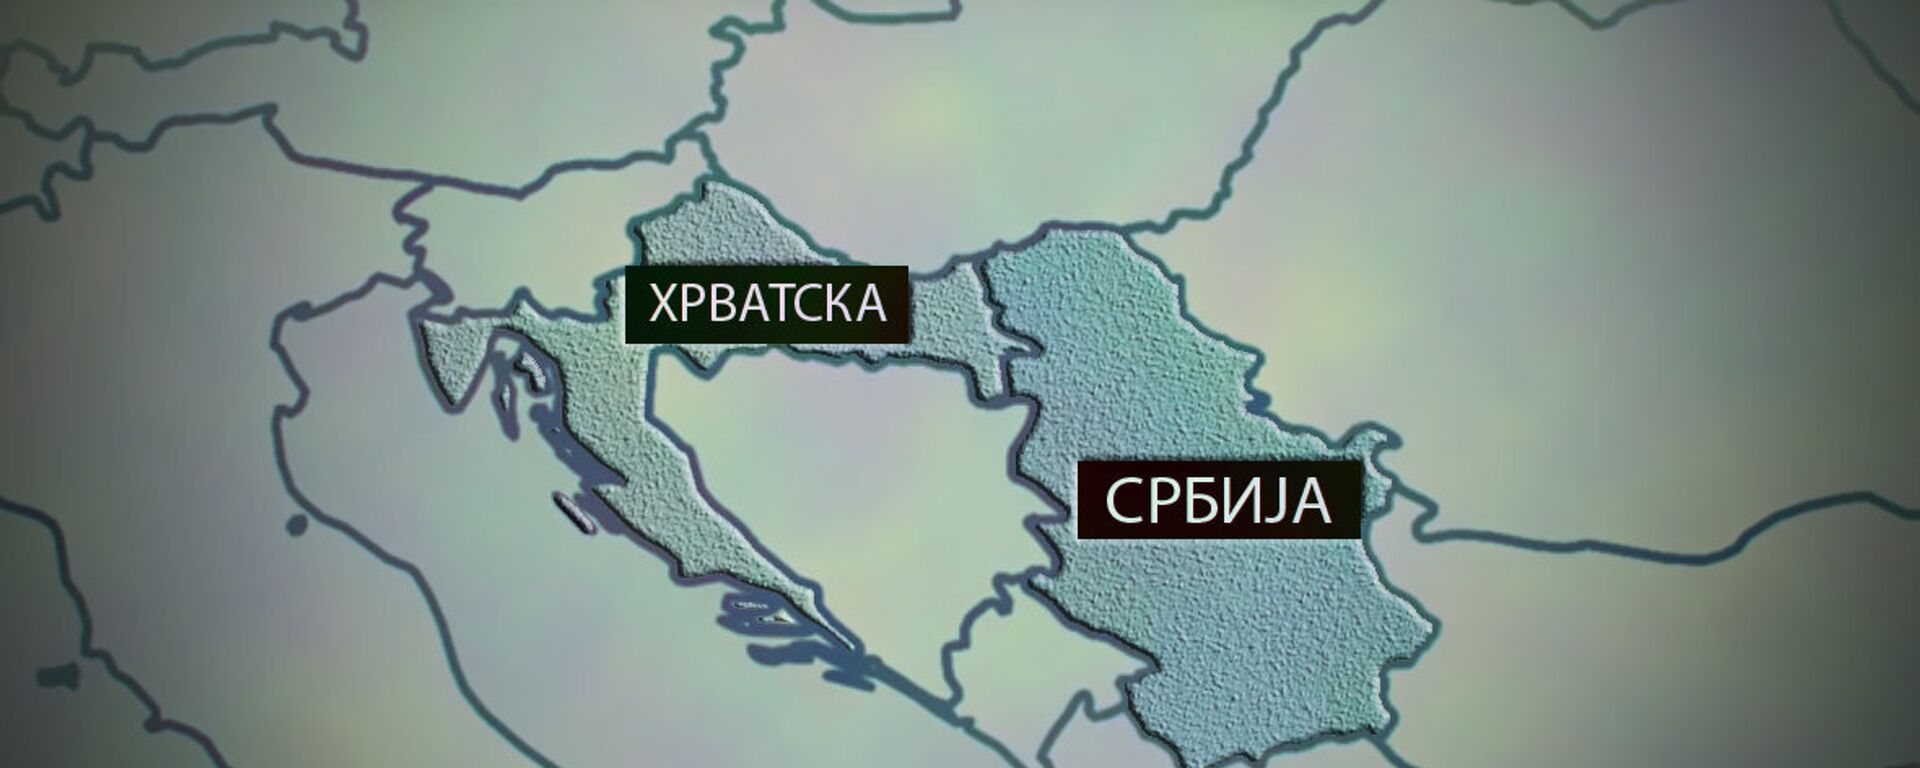 Карта Србија - Хрватска - Sputnik Србија, 1920, 10.10.2021